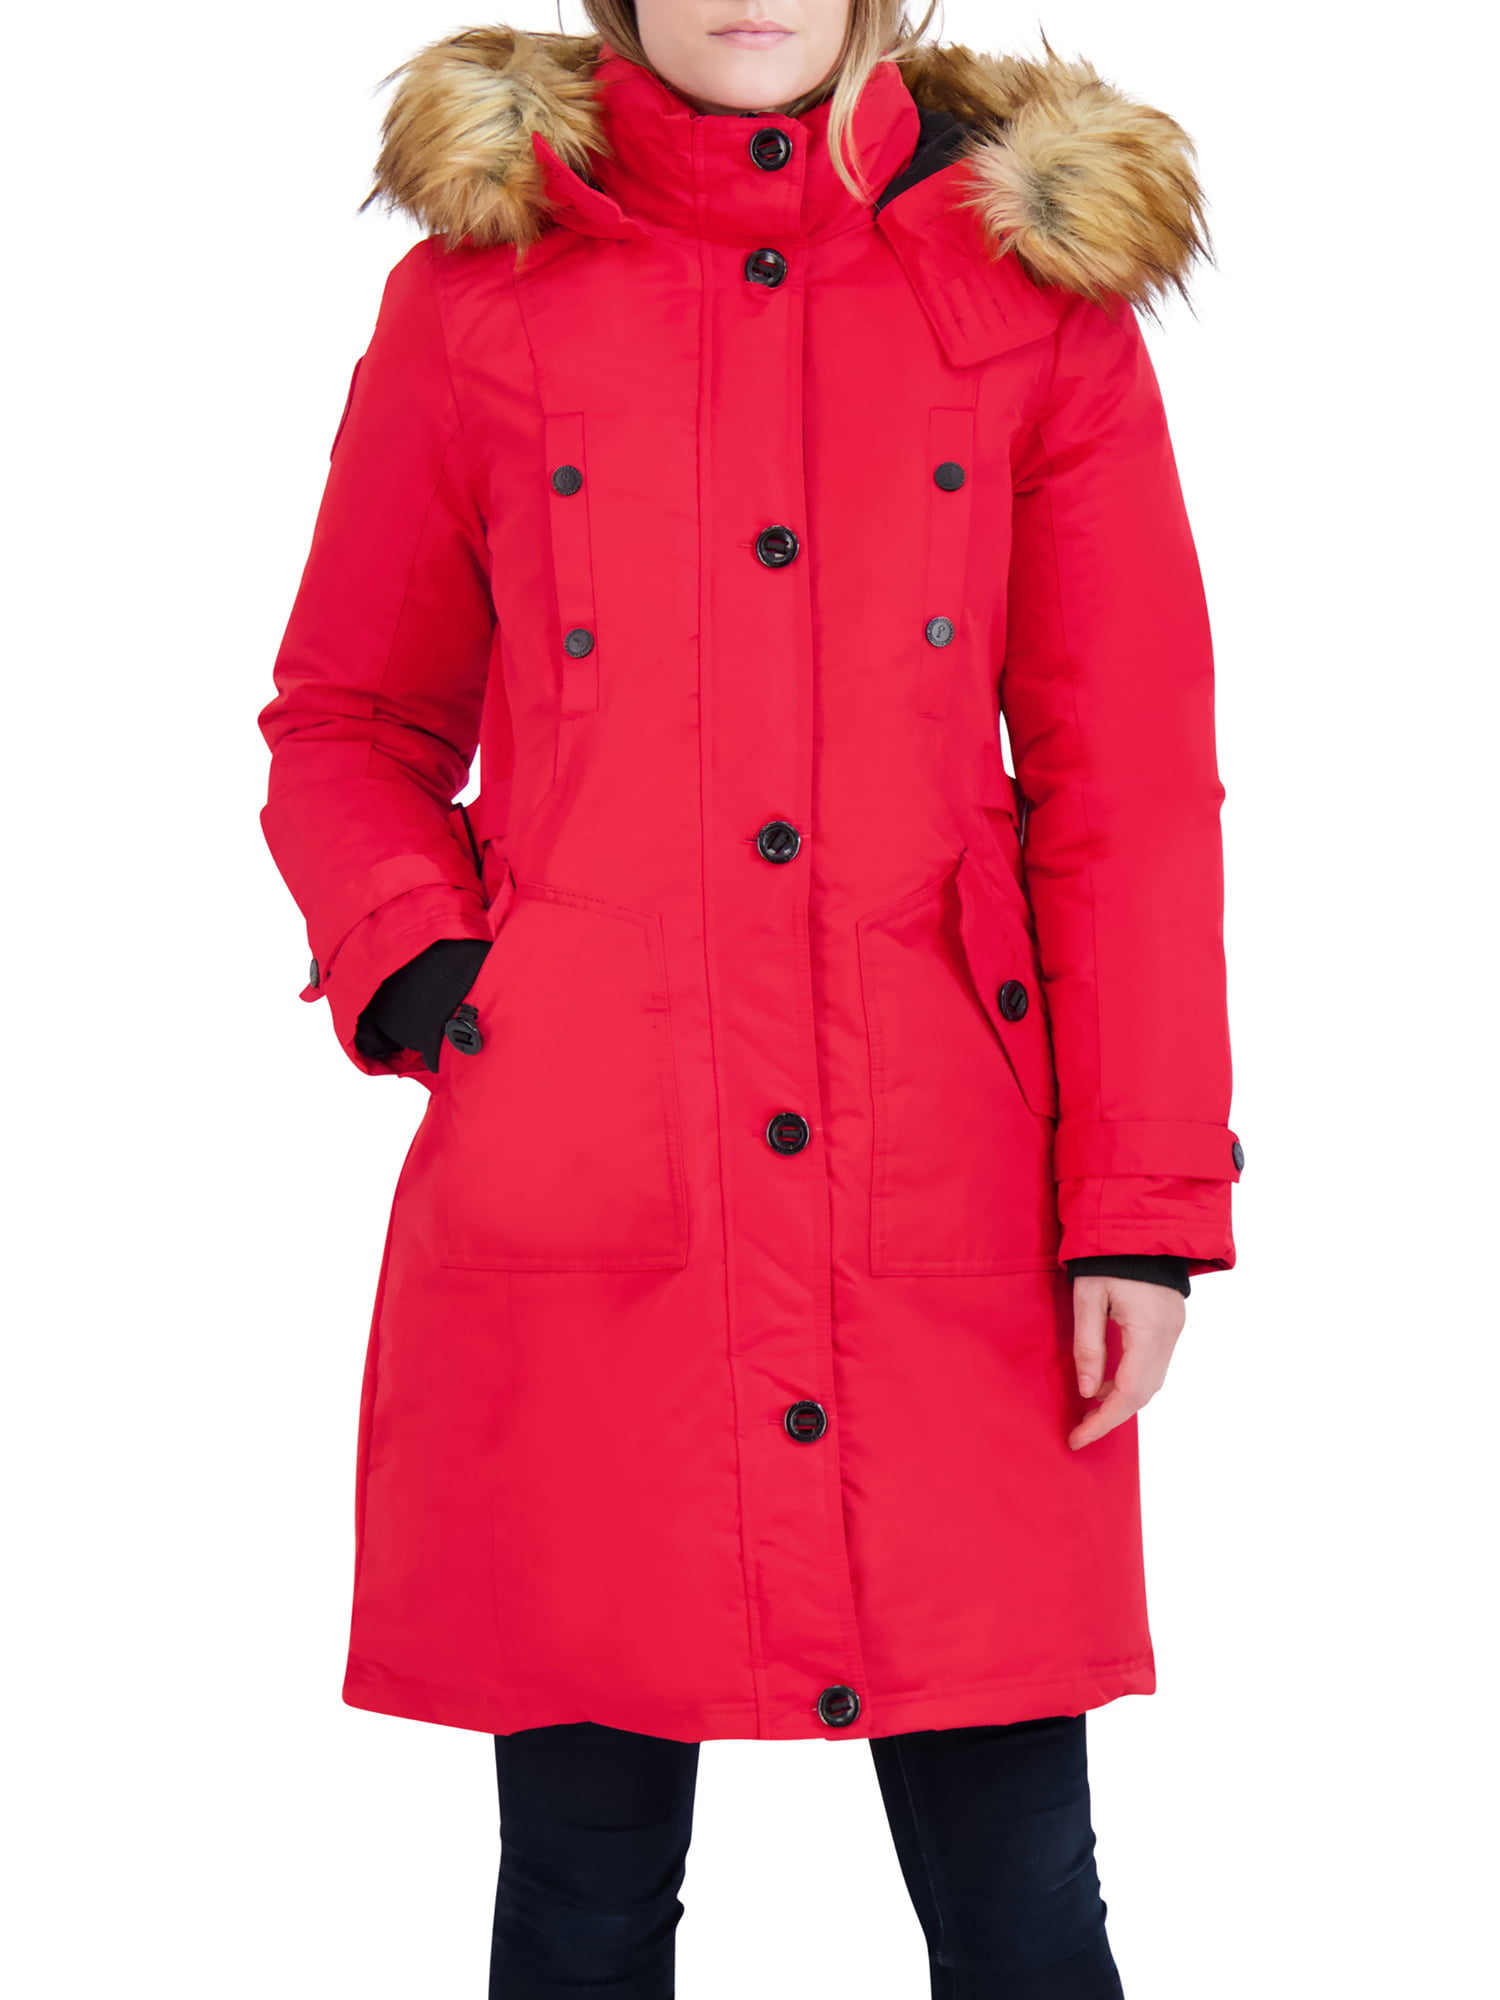 Canada Weather Gear Women's Faux Fur Hooded Parka - Walmart.com